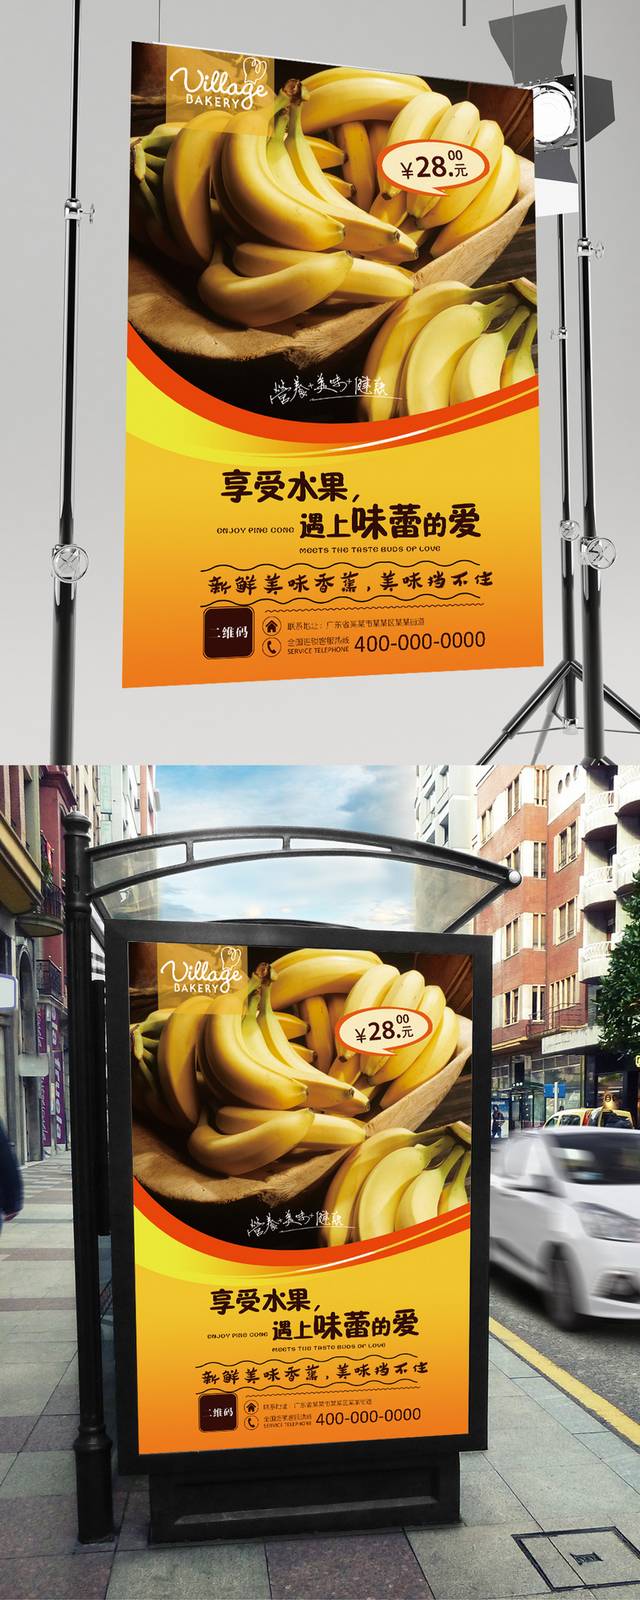 香蕉宣传海报设计下载